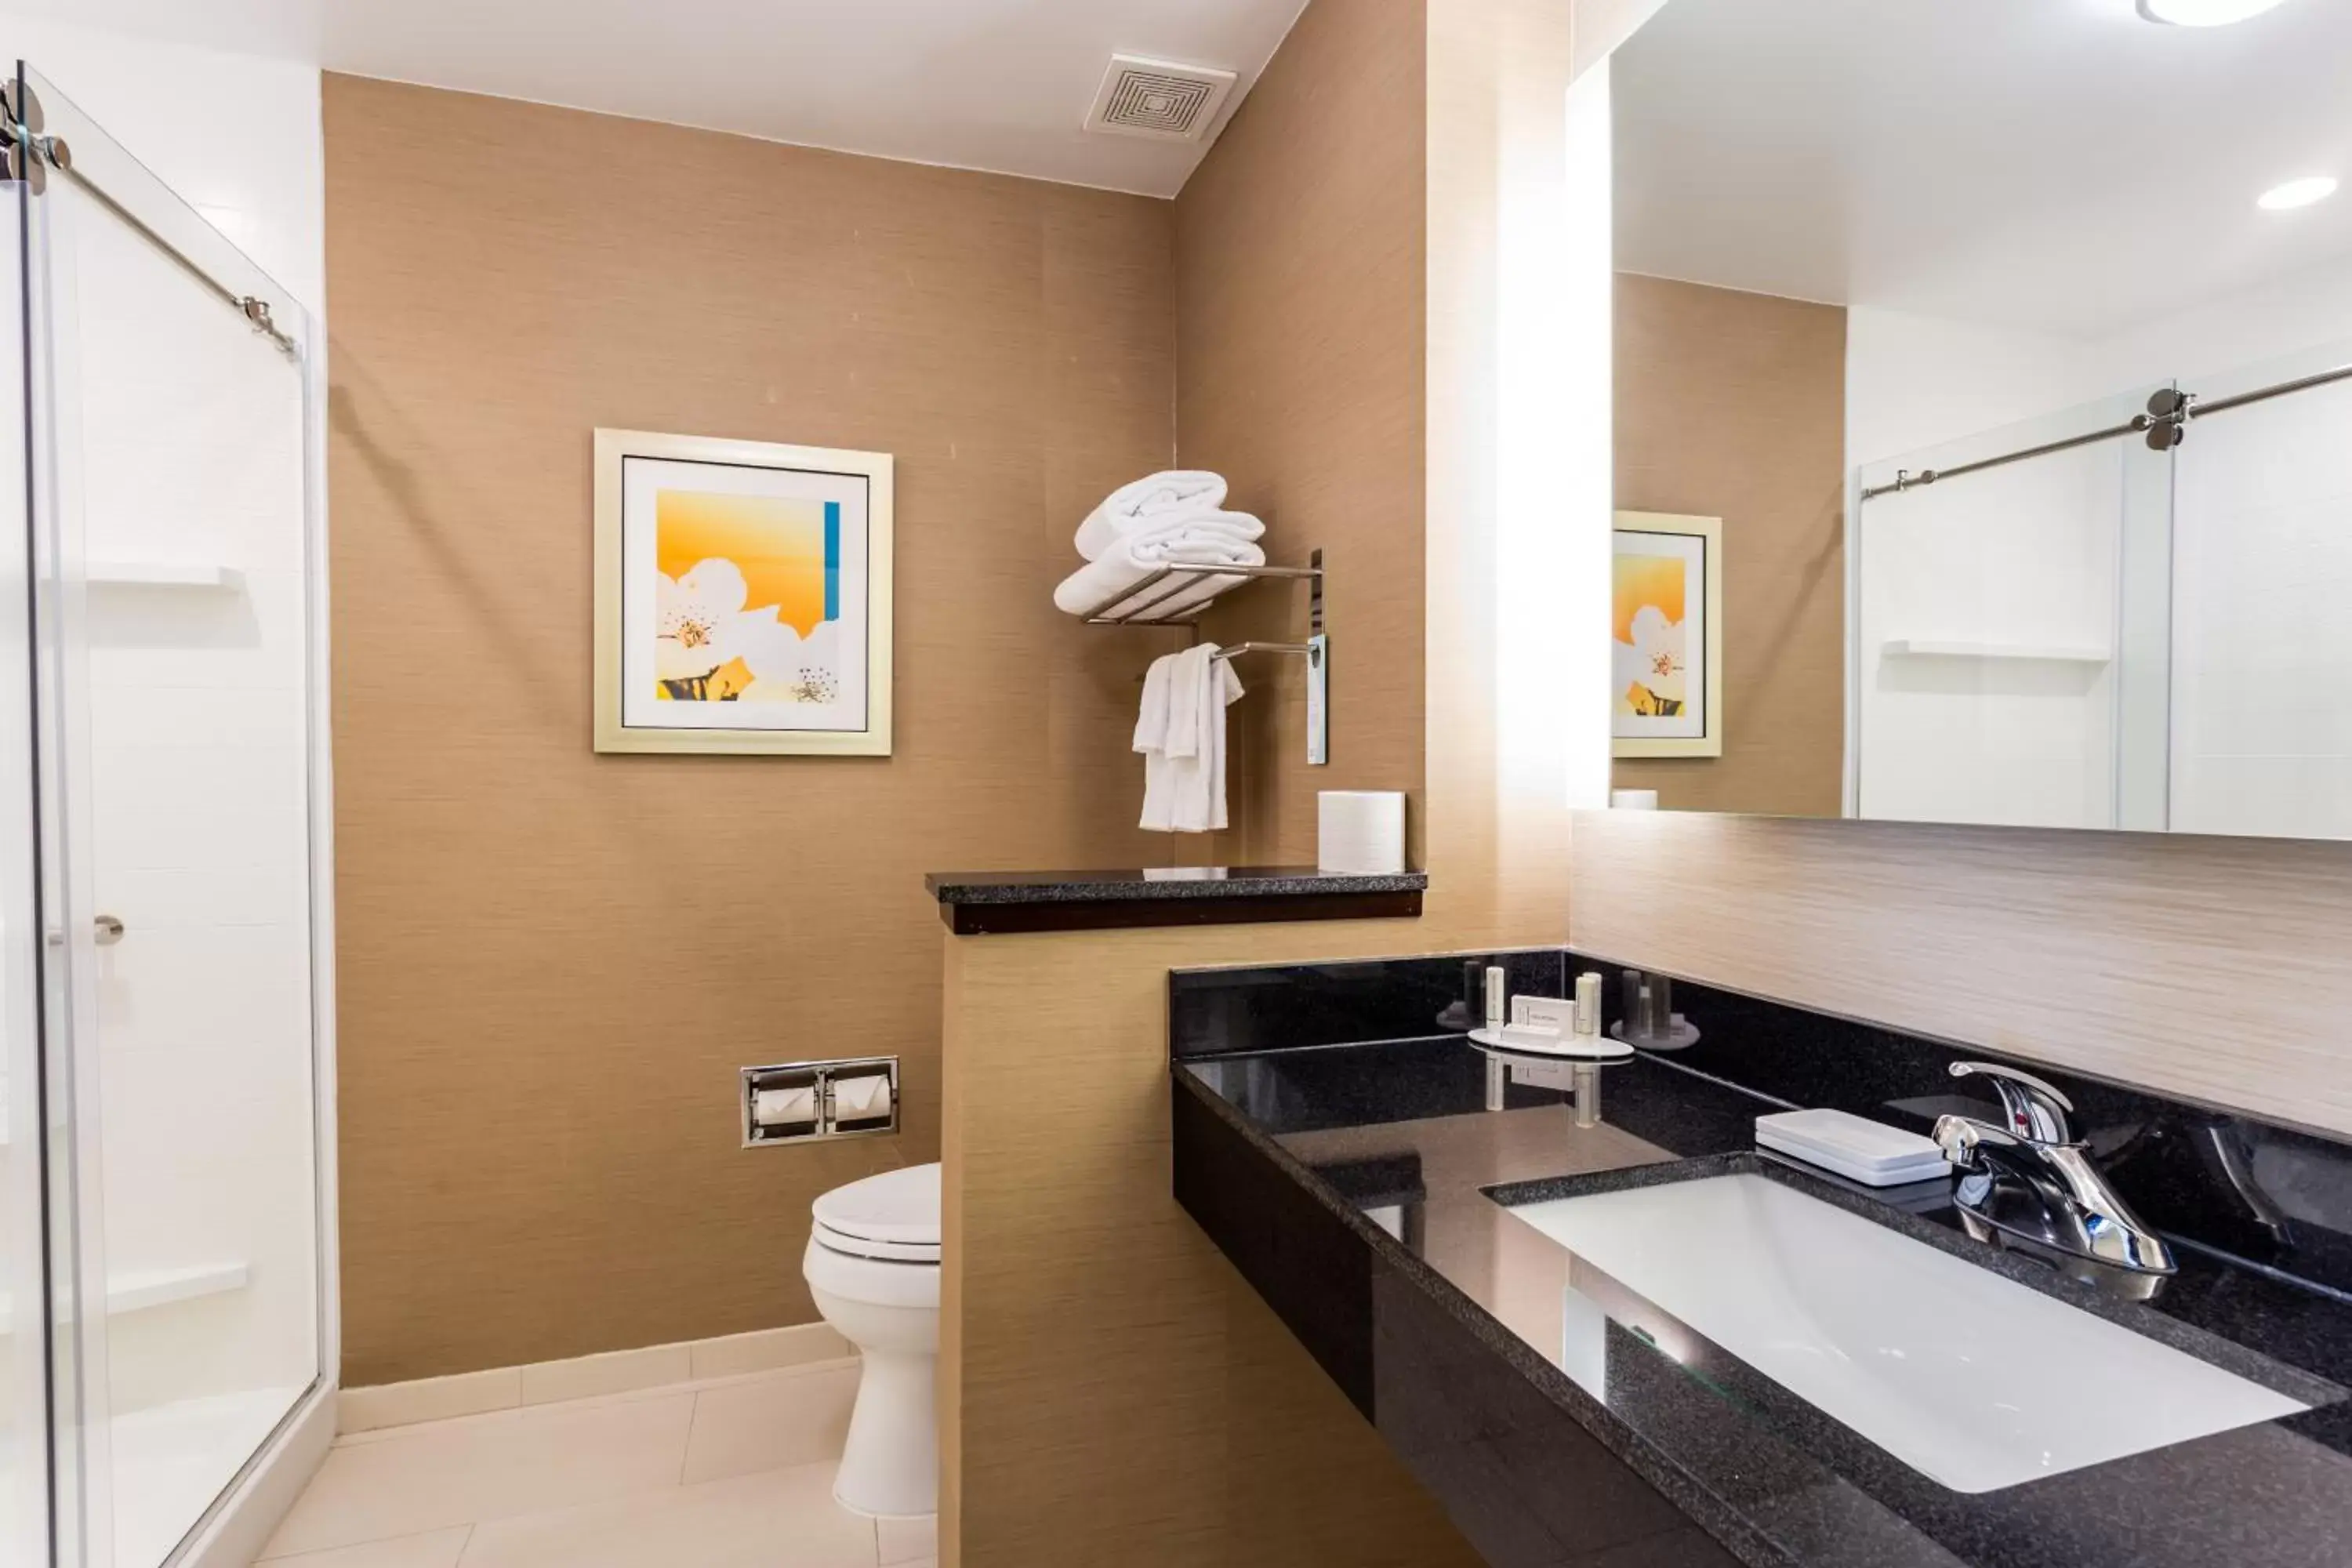 Bathroom in Fairfield Inn & Suites by Marriott Bay City, Texas